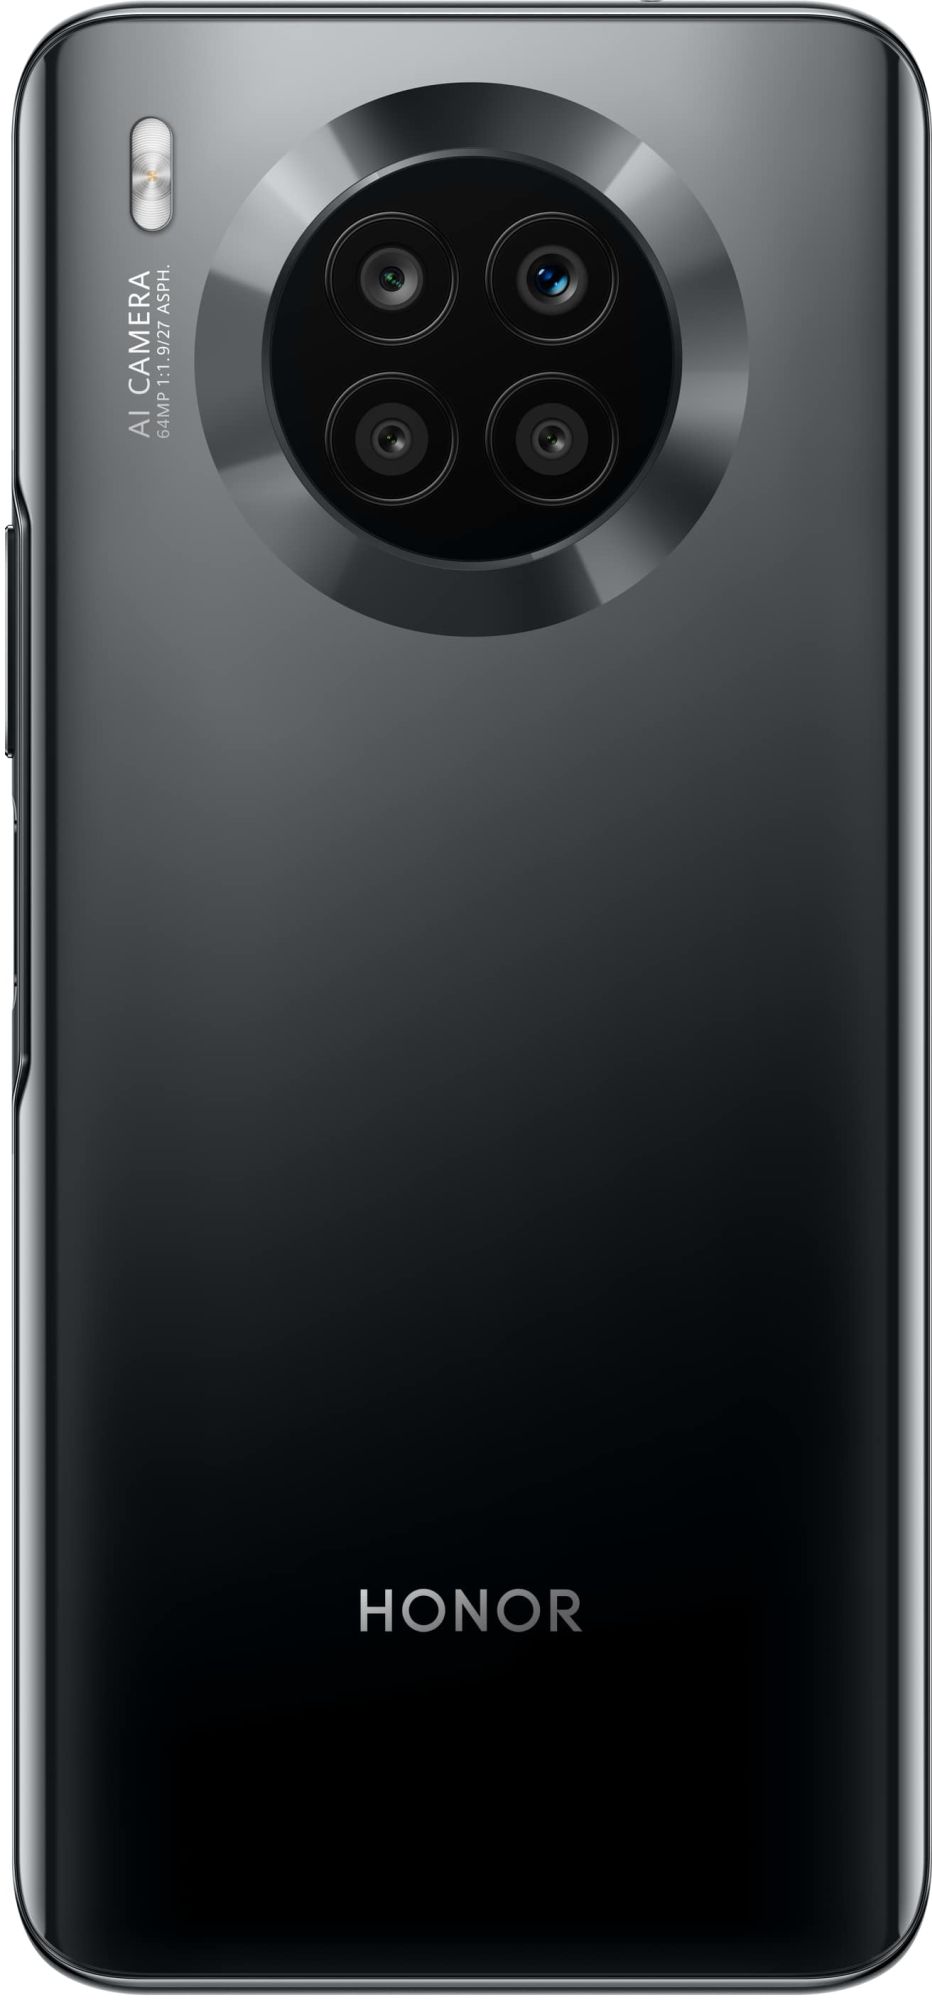 Huawei Honor 50 Lite 128GB midnight black